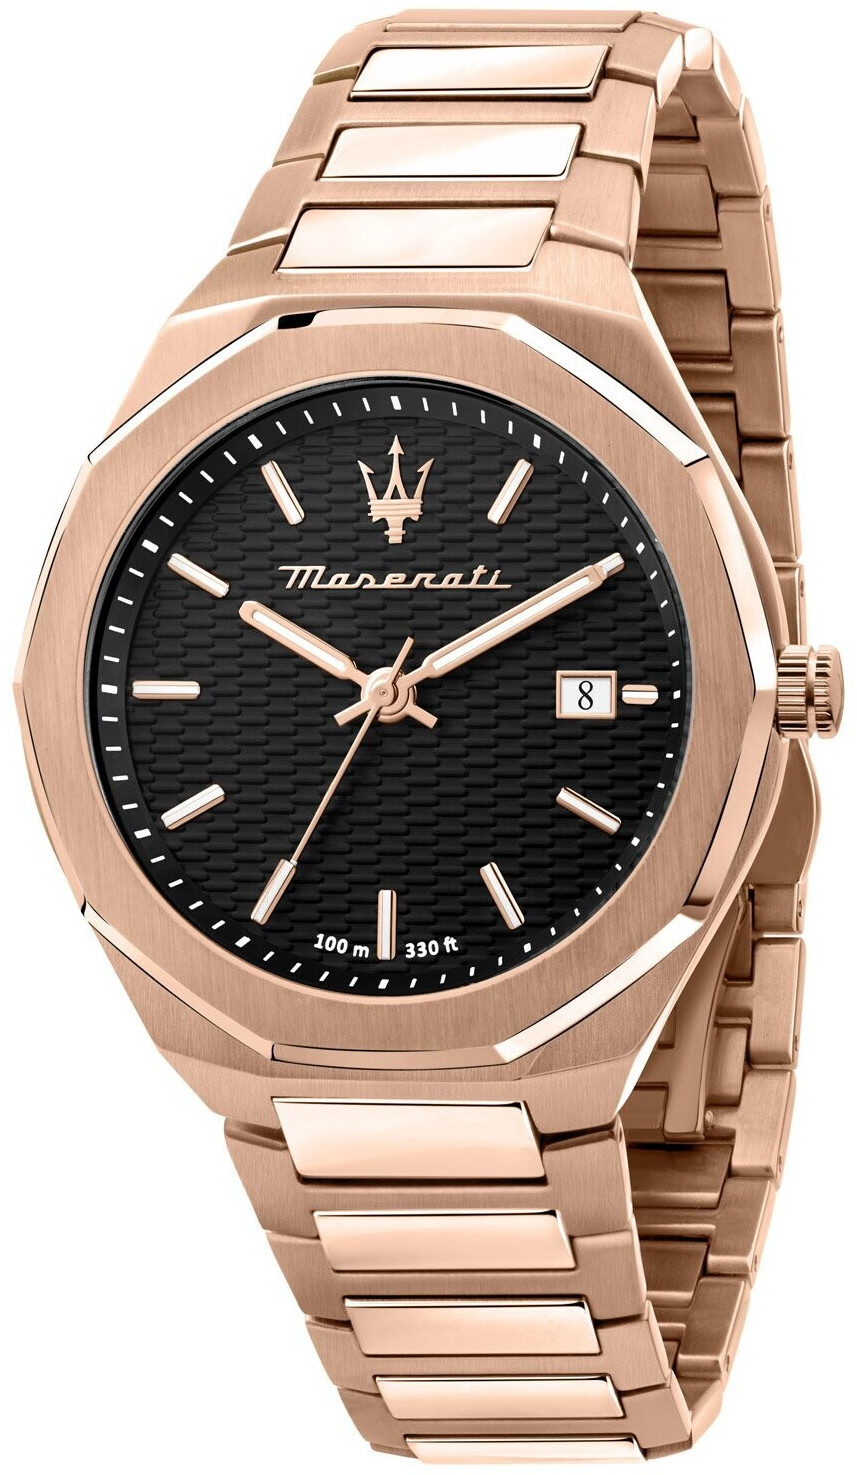 Maserati Armbanduhr 153,99 ab bei Quarz | Styles € R88736420 Preisvergleich